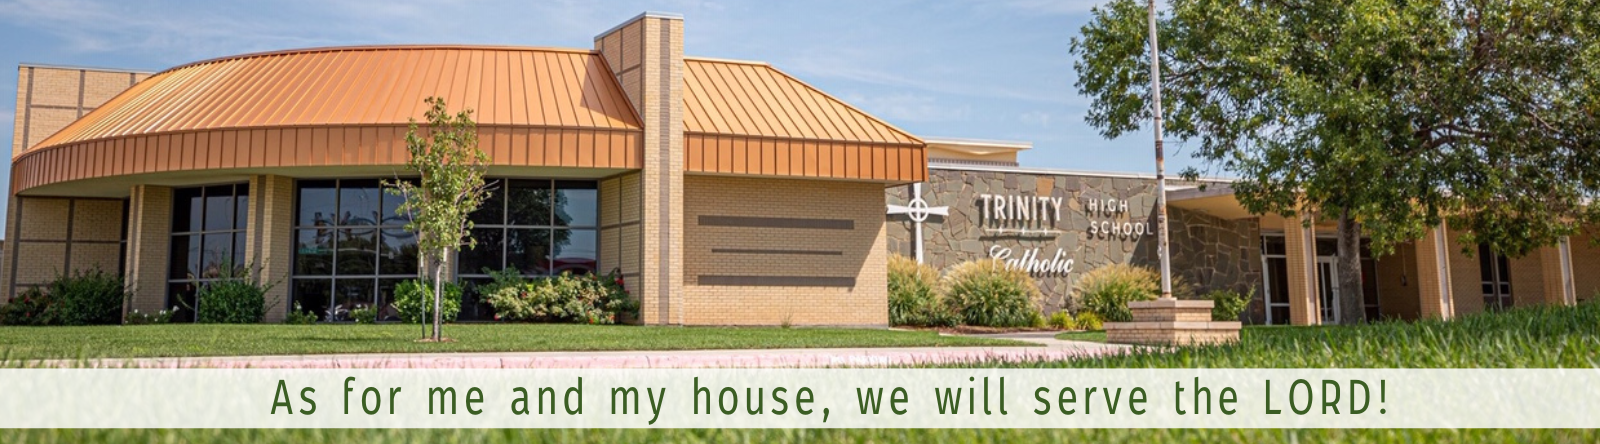 Trinity High School - Catholic High School Chicago